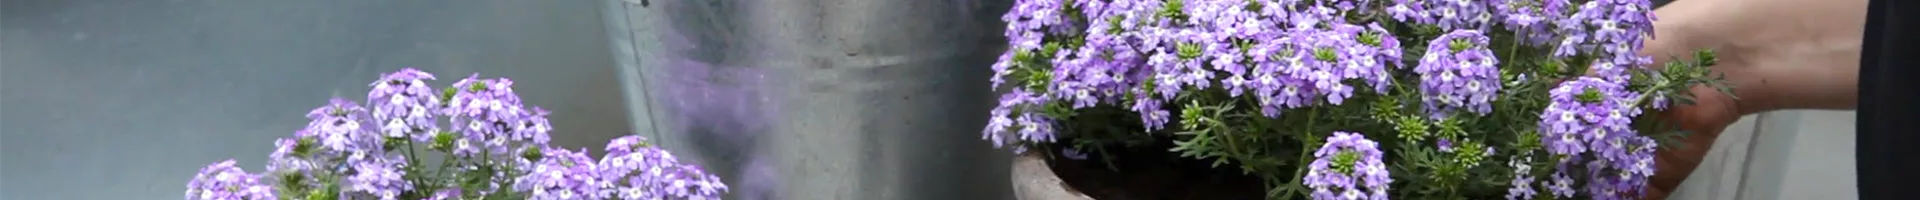 Eisenkraut - Einpflanzen in ein Gefäß (thumbnail).jpg